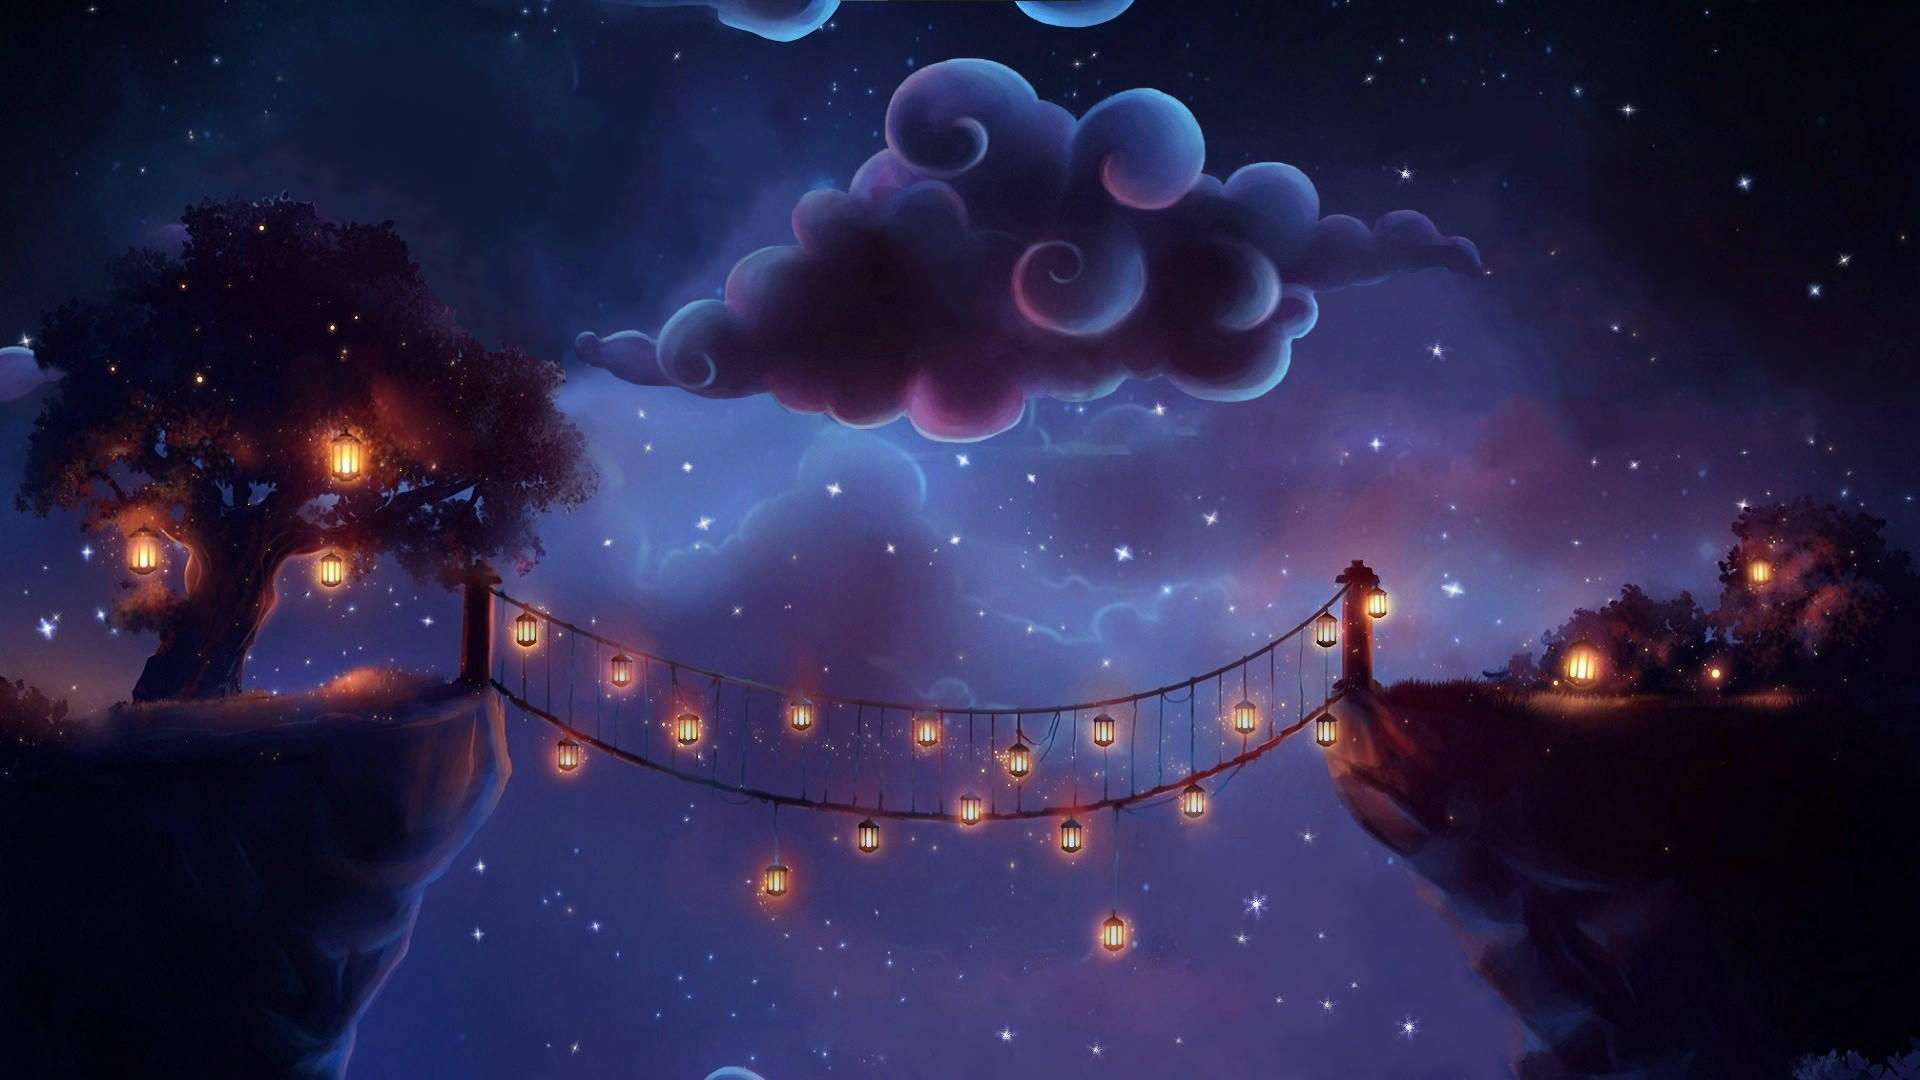 Magic Night Clouds Night Lanterns Bridge Stars Digital Art 1920x1080